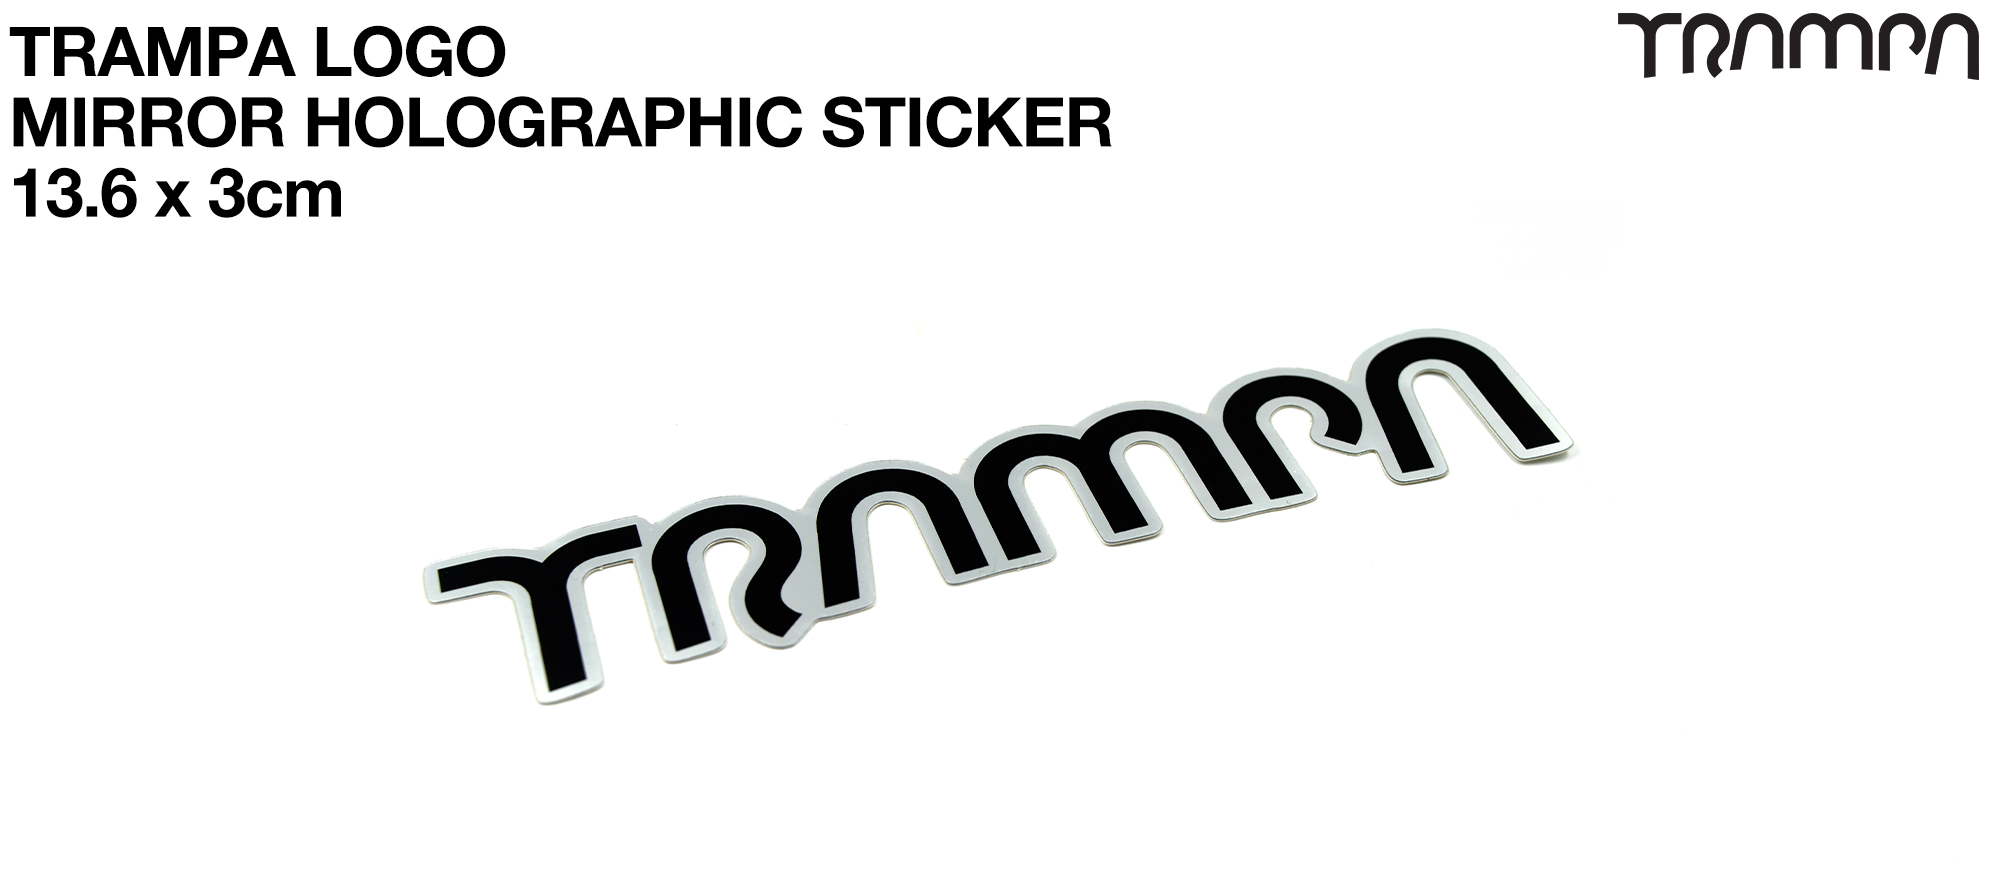 TRAMPA Mirror Holographic Sticker - 13.6 x 3cm